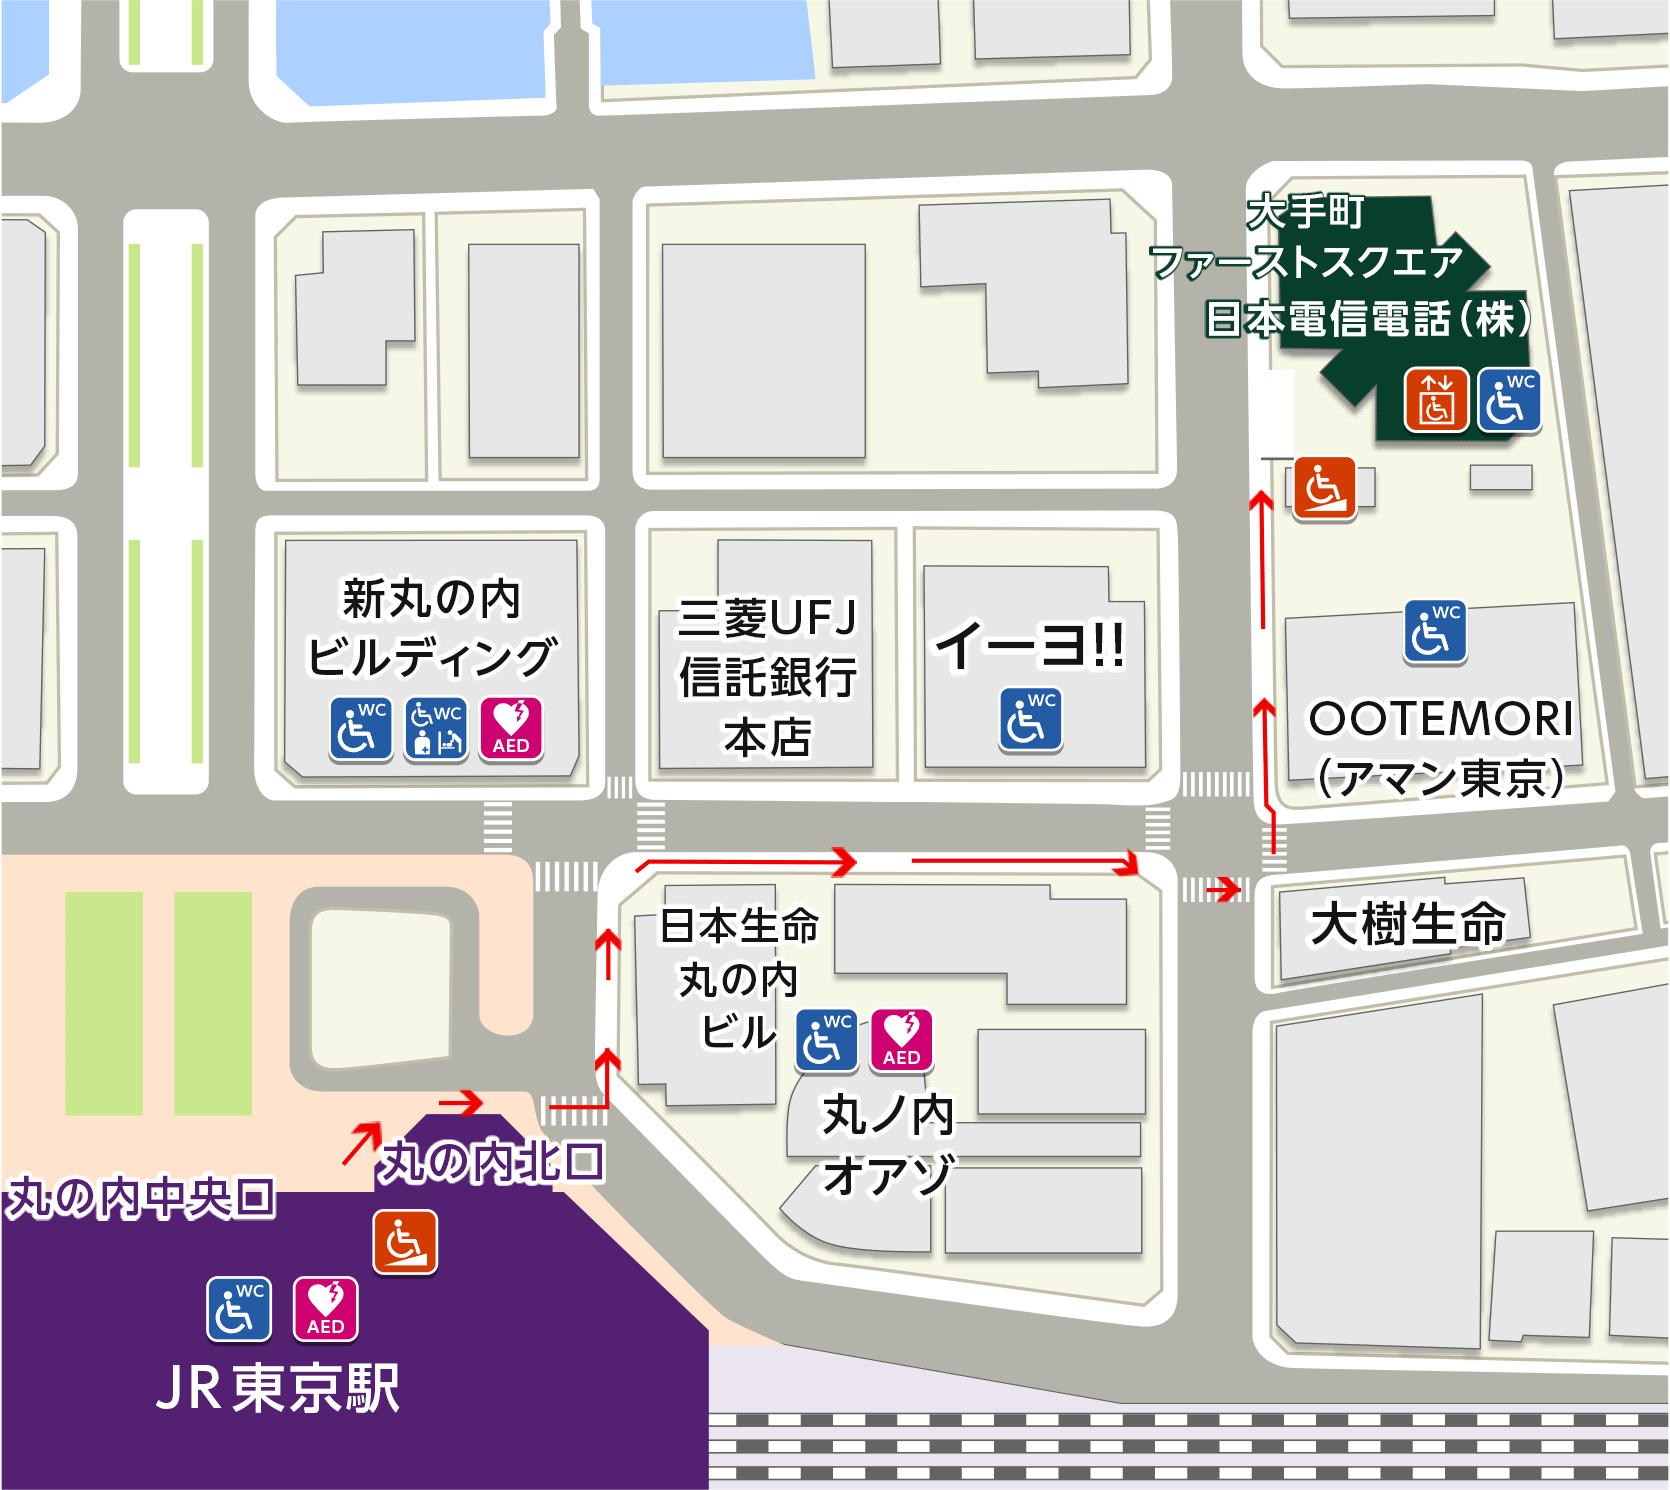 地図：JR東京駅丸の内北口から日本電信電話株式会社がある、大手町ファーストスクウエアビルまでの道順が書いてあります。道順には1から12の番号がついています。13番は、ビルの地下駐車場の位置です。視覚障がい者の方には、ウェブページの後半に、ことばで道順を案内しています。